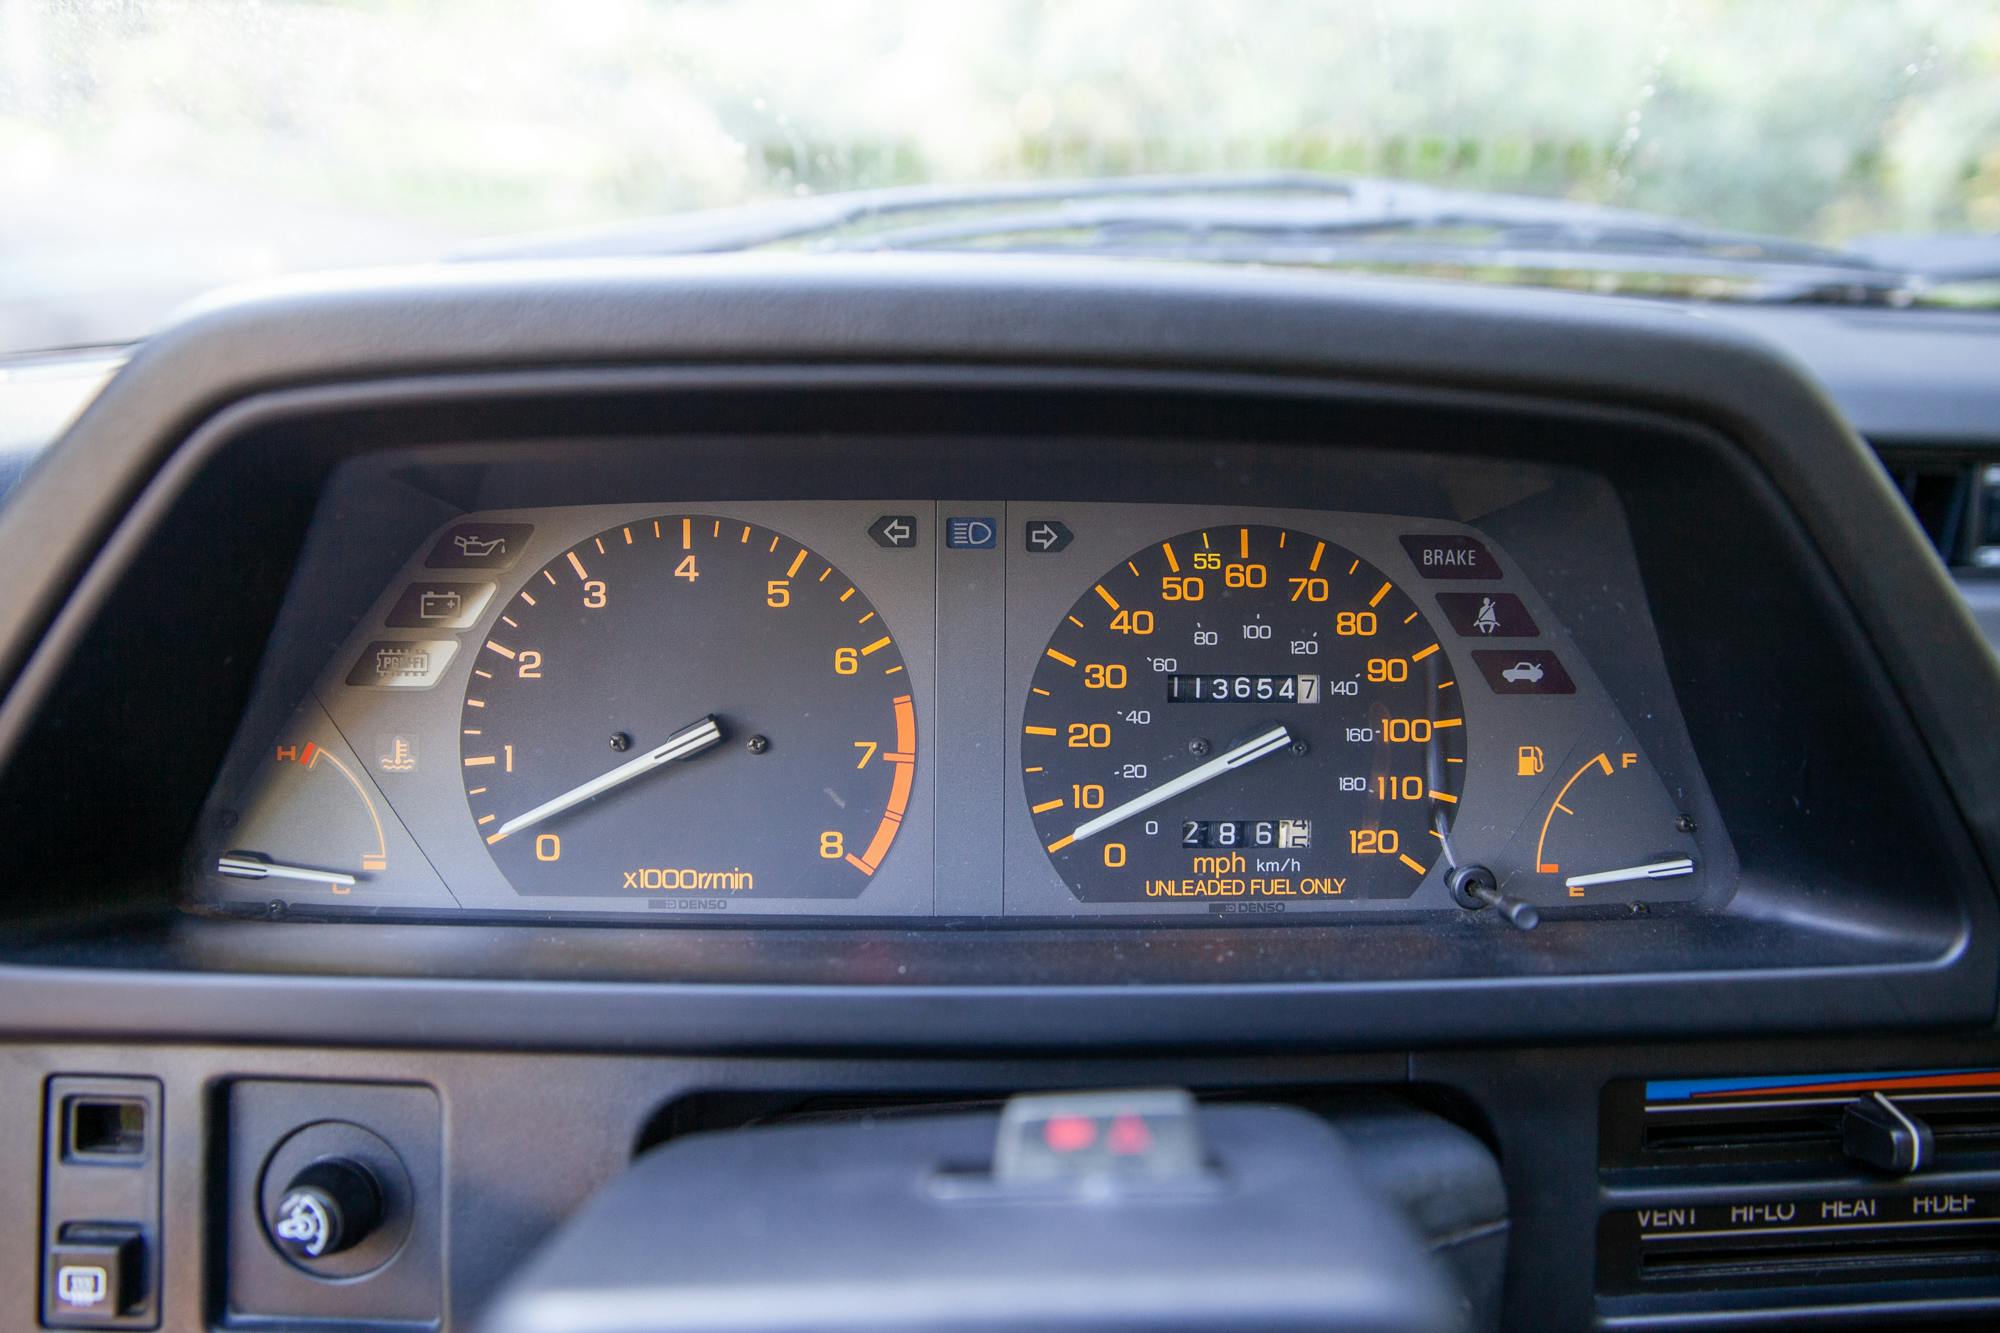 1986 Honda Civic Si interior dash gauges